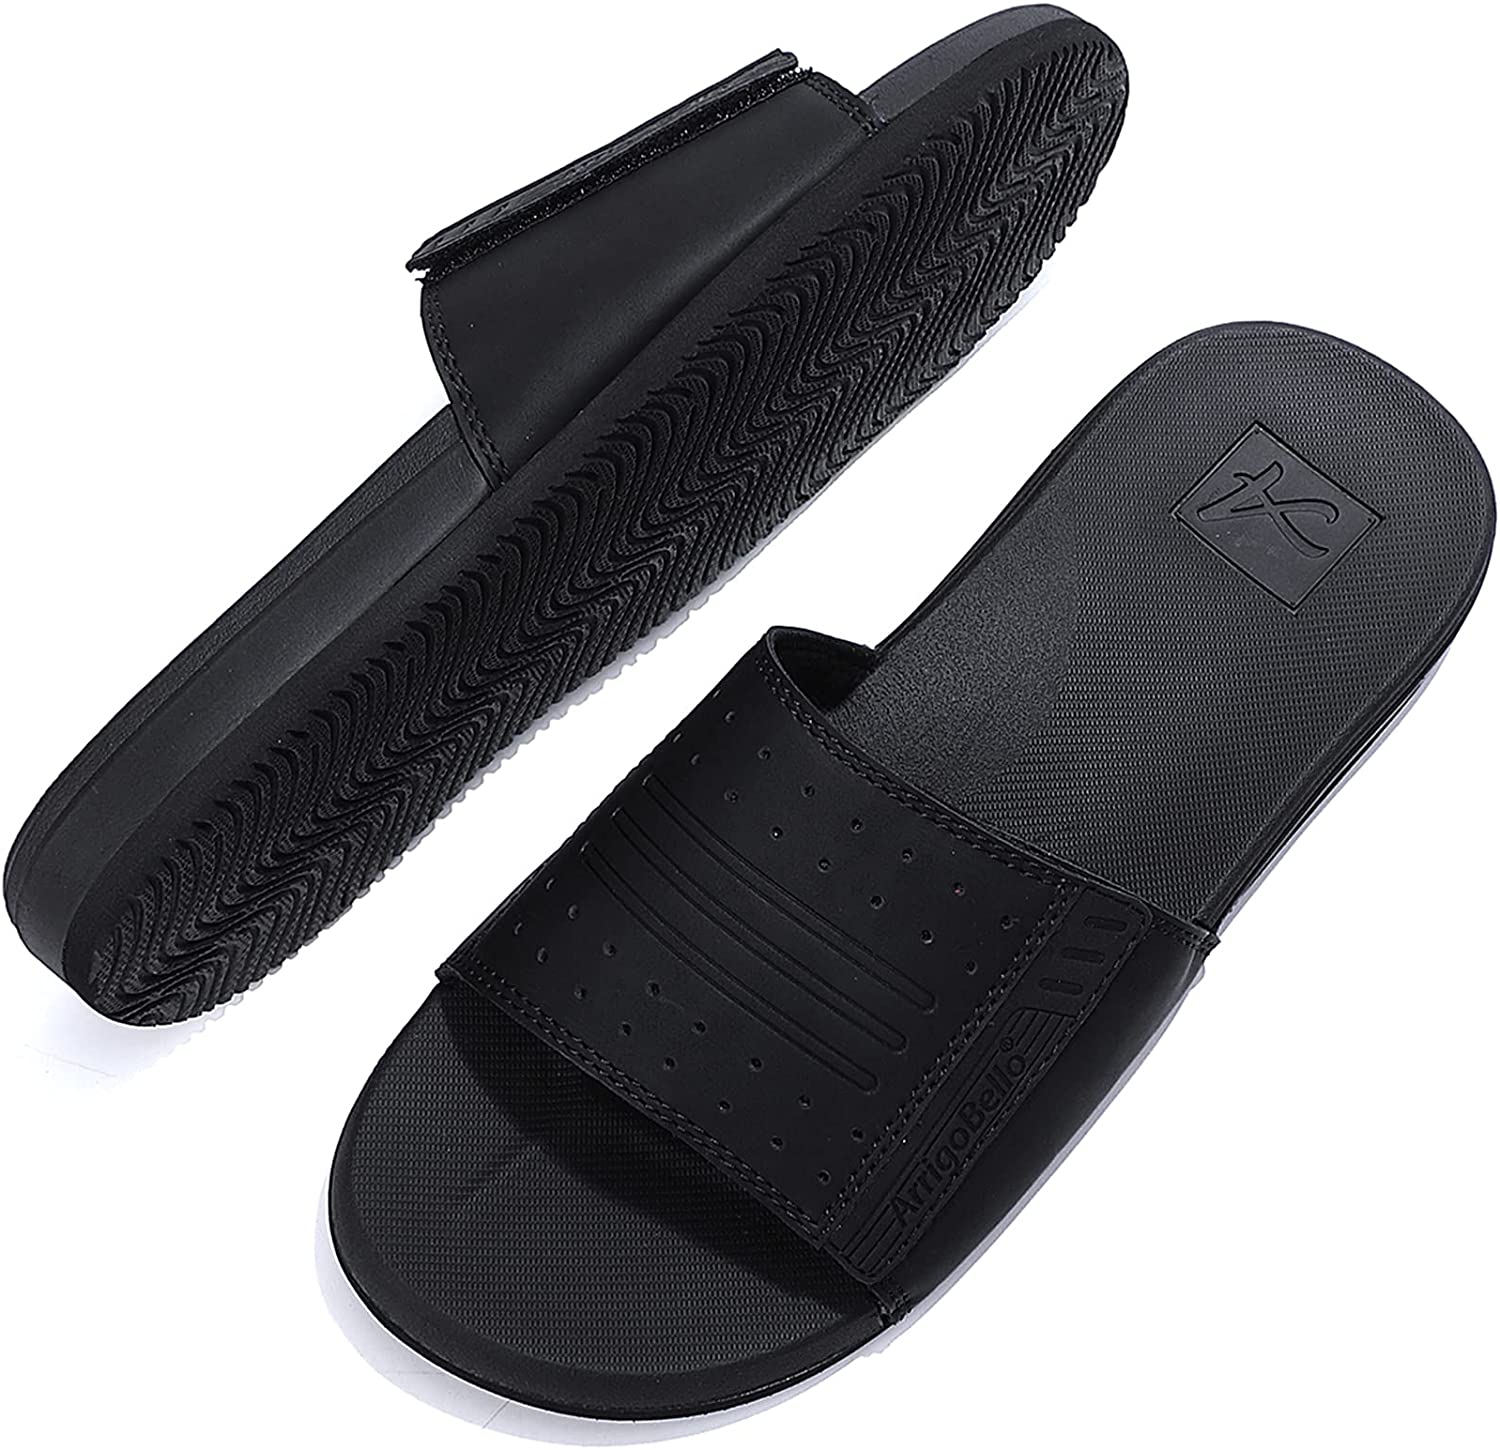 ARRIGO BELLO Sliders Mens Leather Comfortable Summer Adjust Open Toe Sandals Beach Pool Flip Flops Outdoor Indoor Slippers Size 7-11 UK 